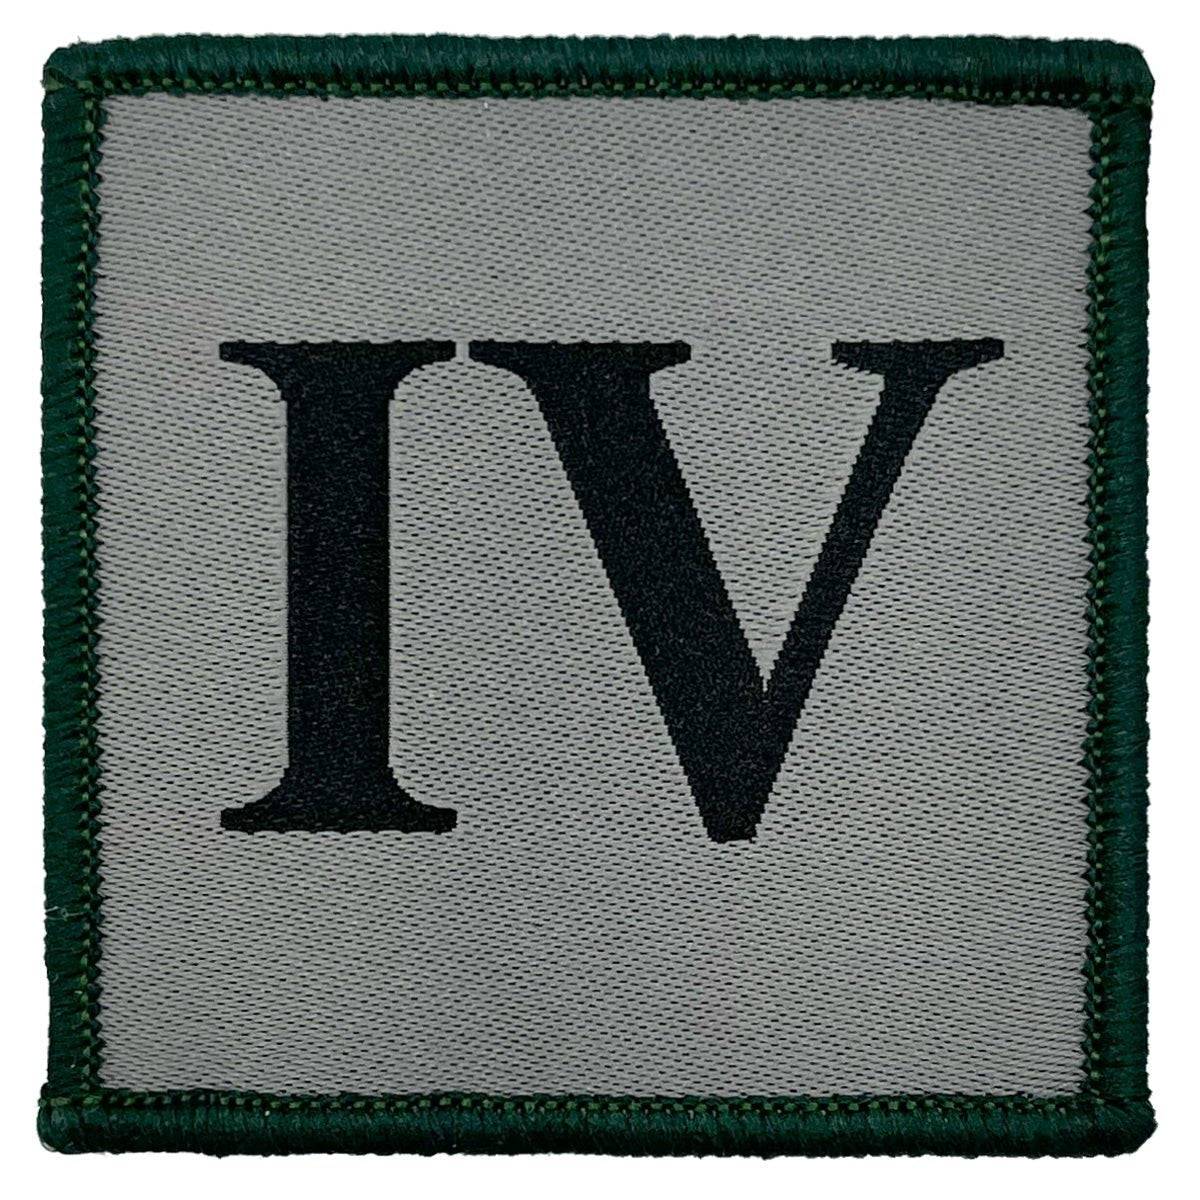 Ranger Regiment IV Iron On TRF Badge with Green Border - John Bull Clothing